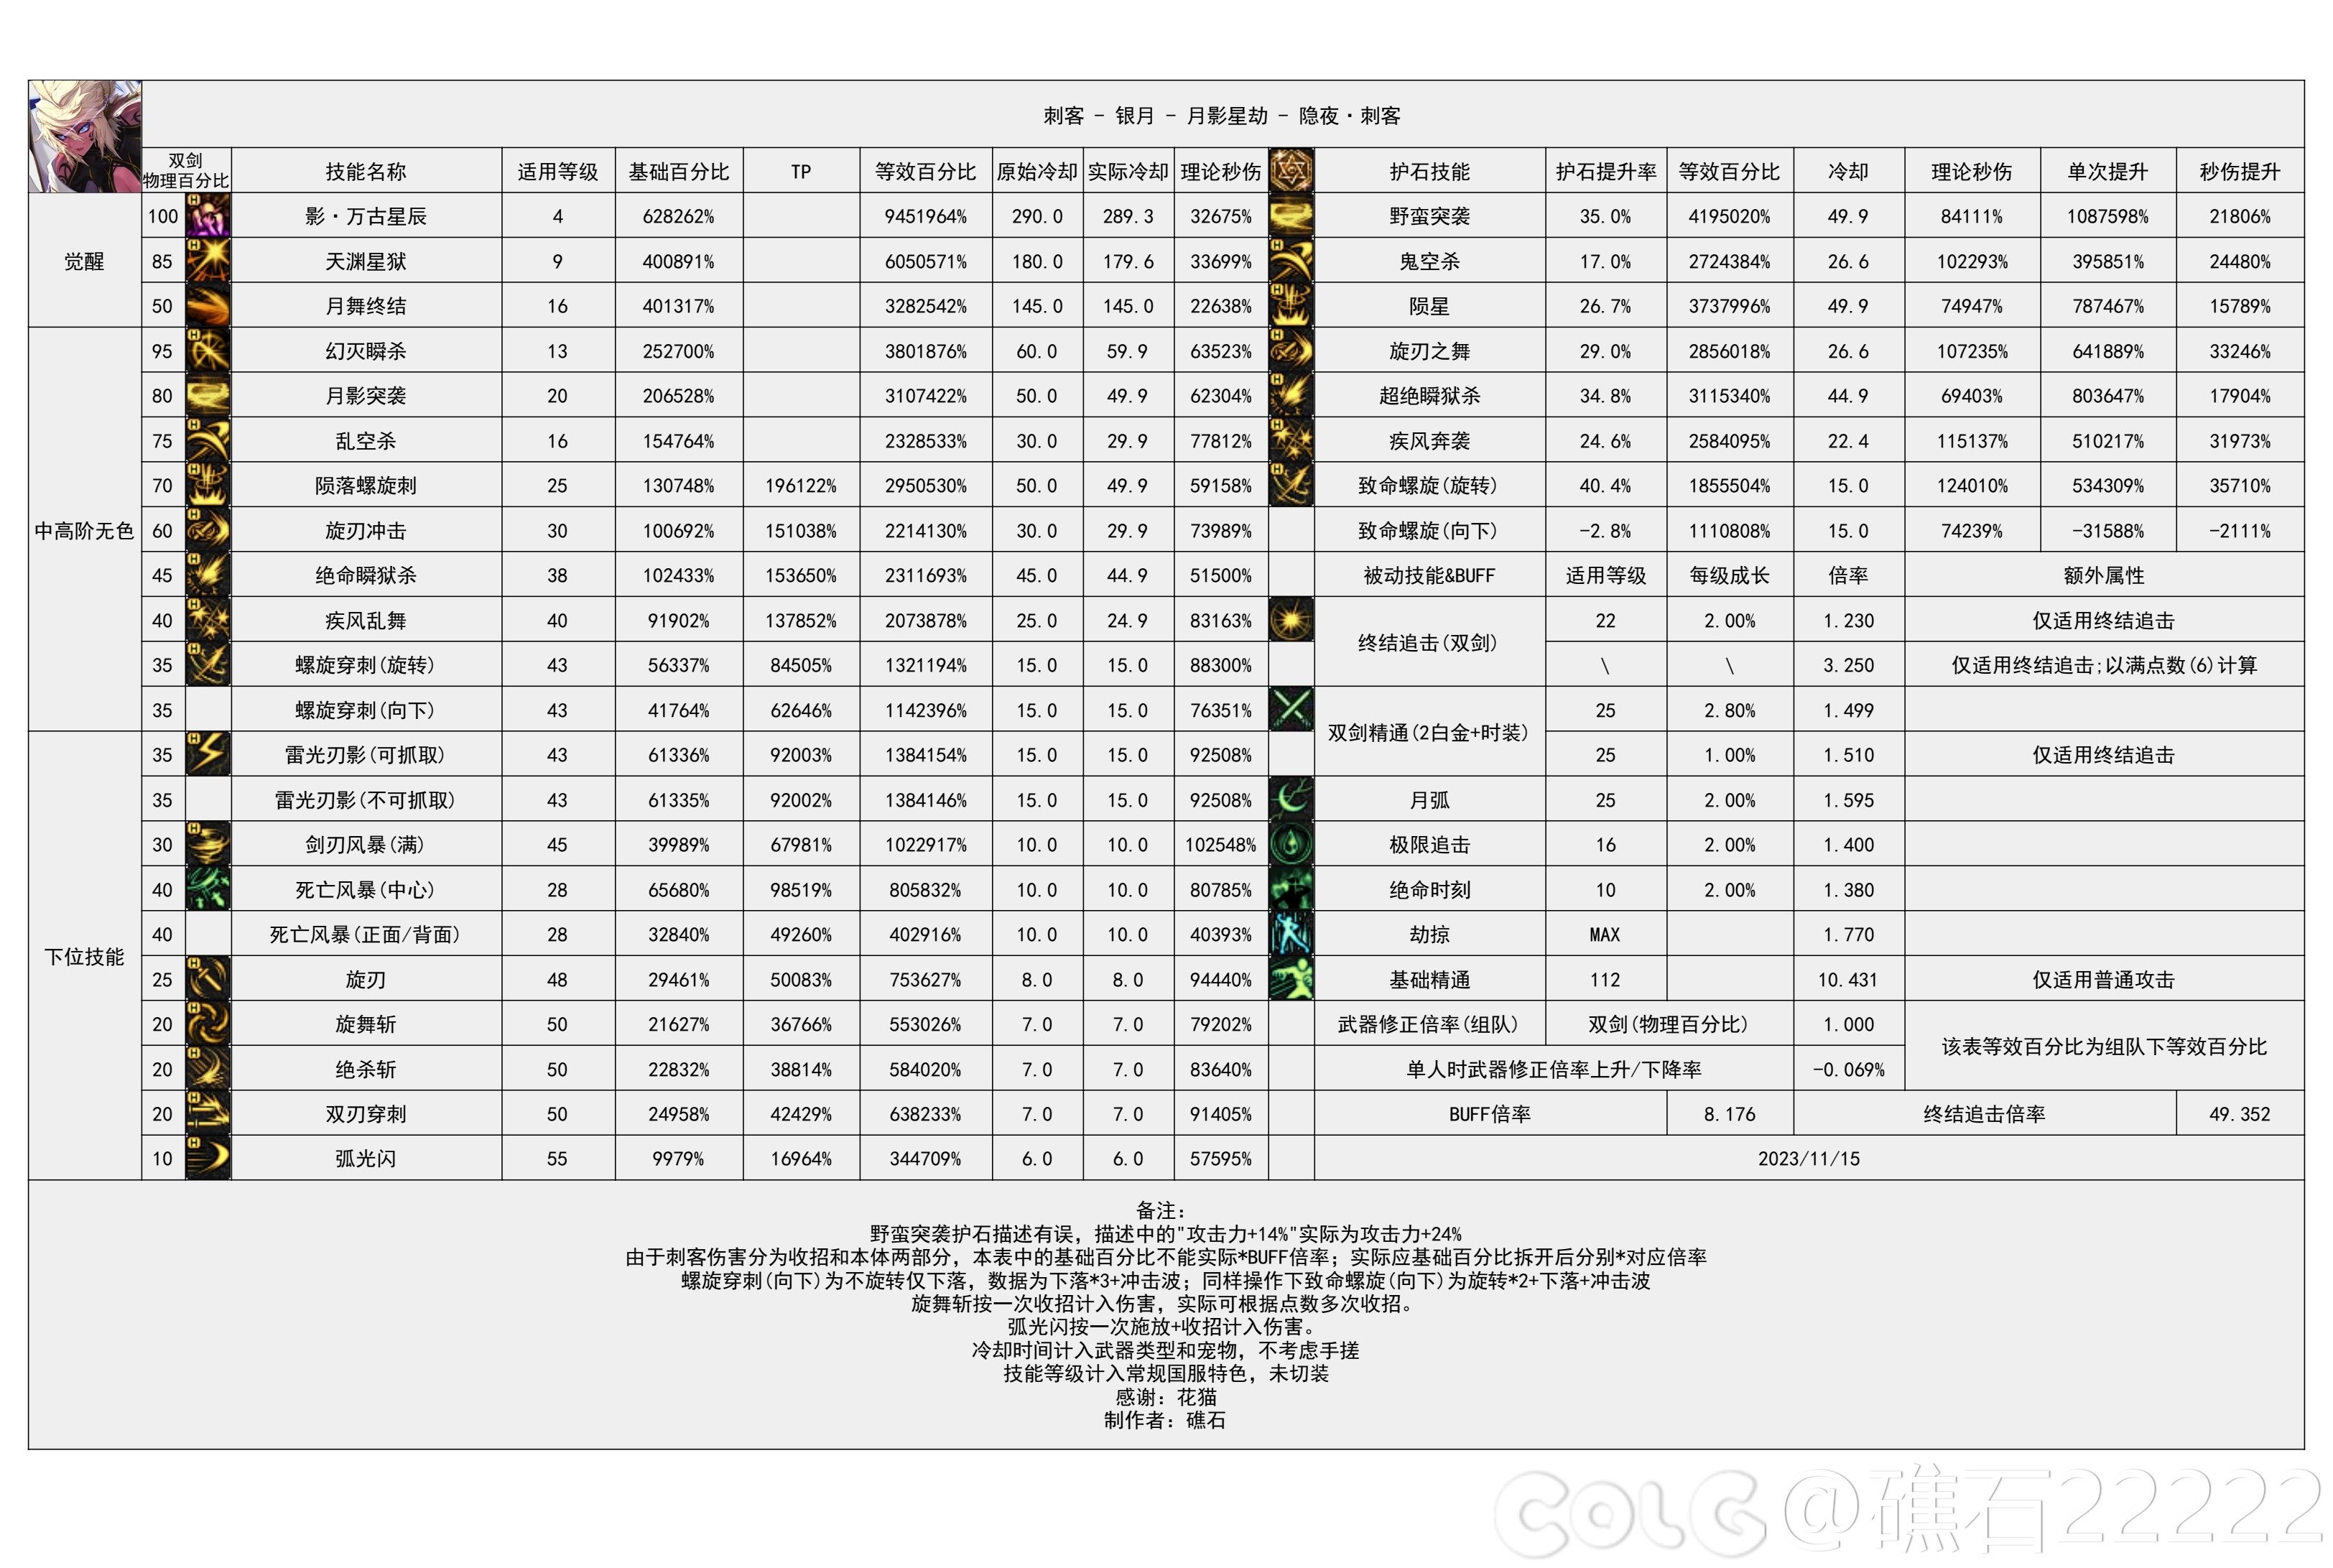 【国服现状】110版本输出职业数据表(国正5.15)(最新)61